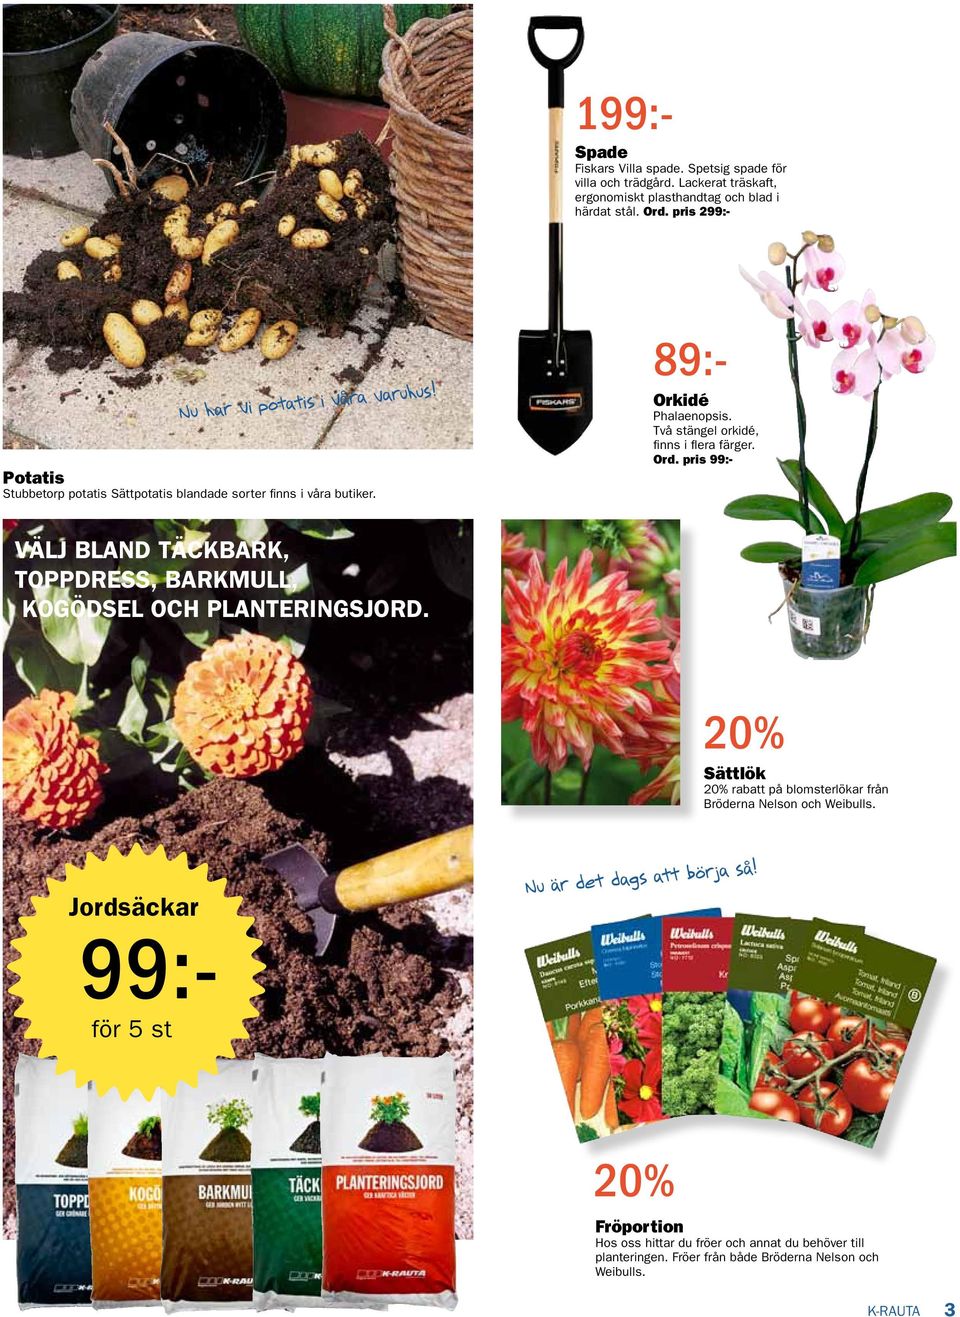 Två stängel orkidé, finns i flera färger. Ord. pris 99:- Välj bland täckbark, toppdress, barkmull, kogödsel och planteringsjord.